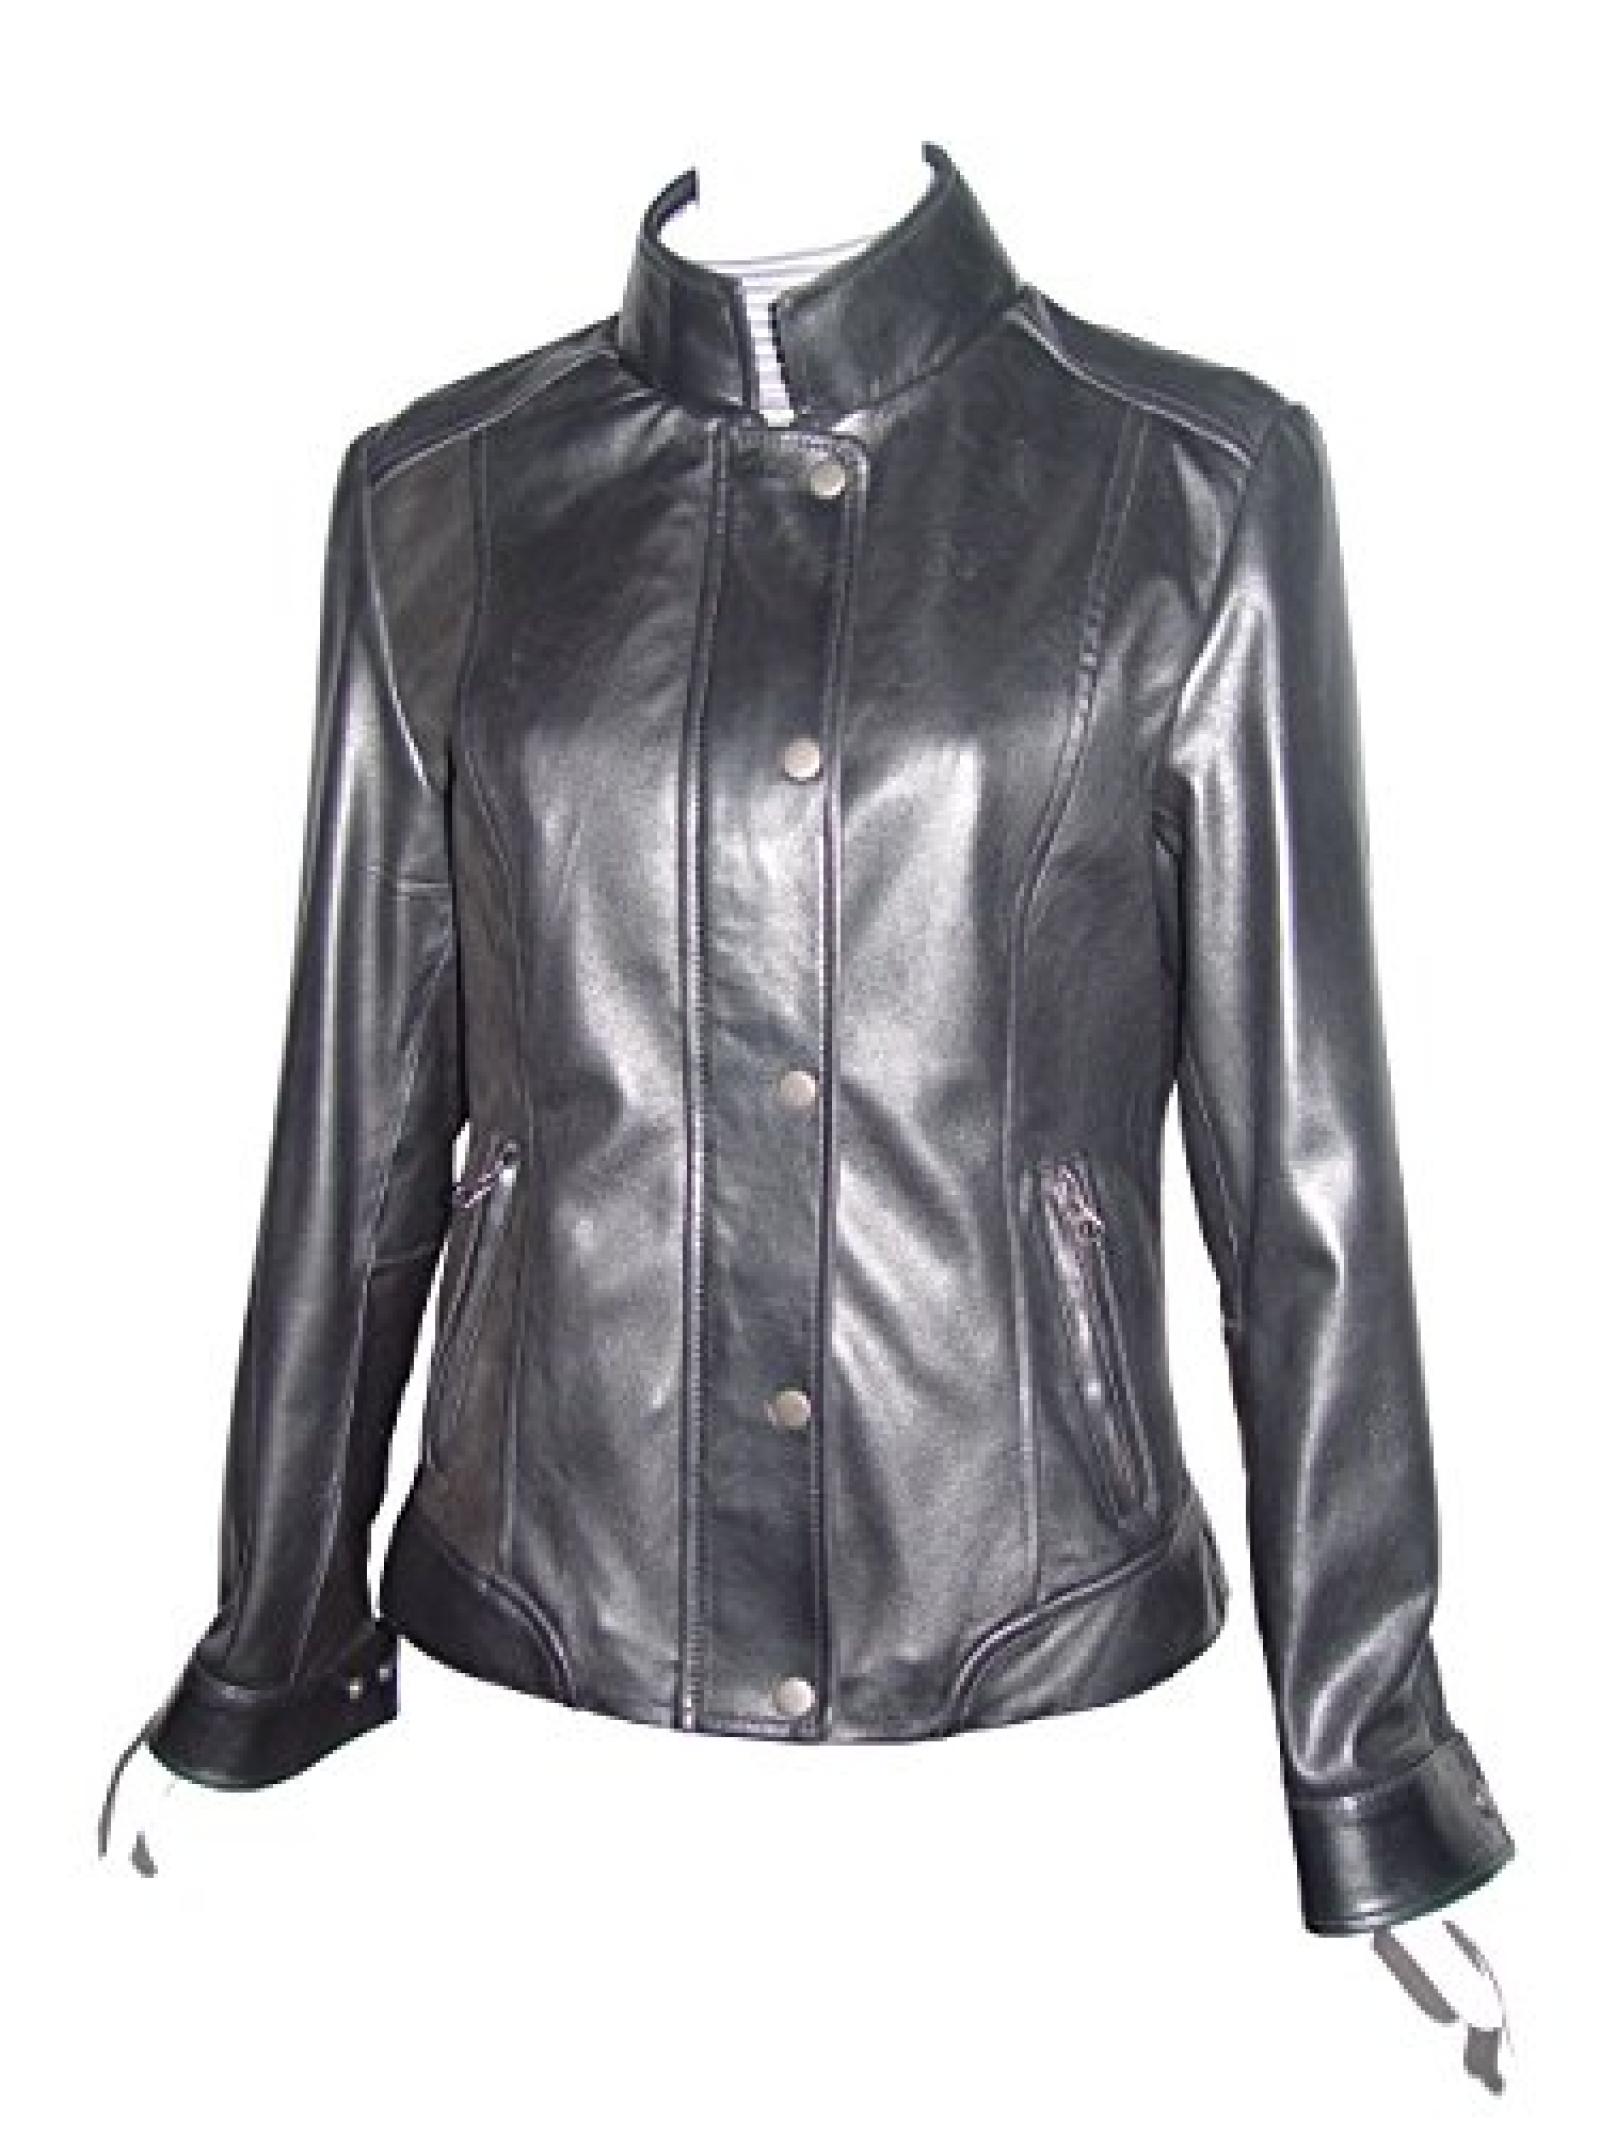 Nettailor Women 4089 Lambskin Leather Casual Jacket Laydown Collar 